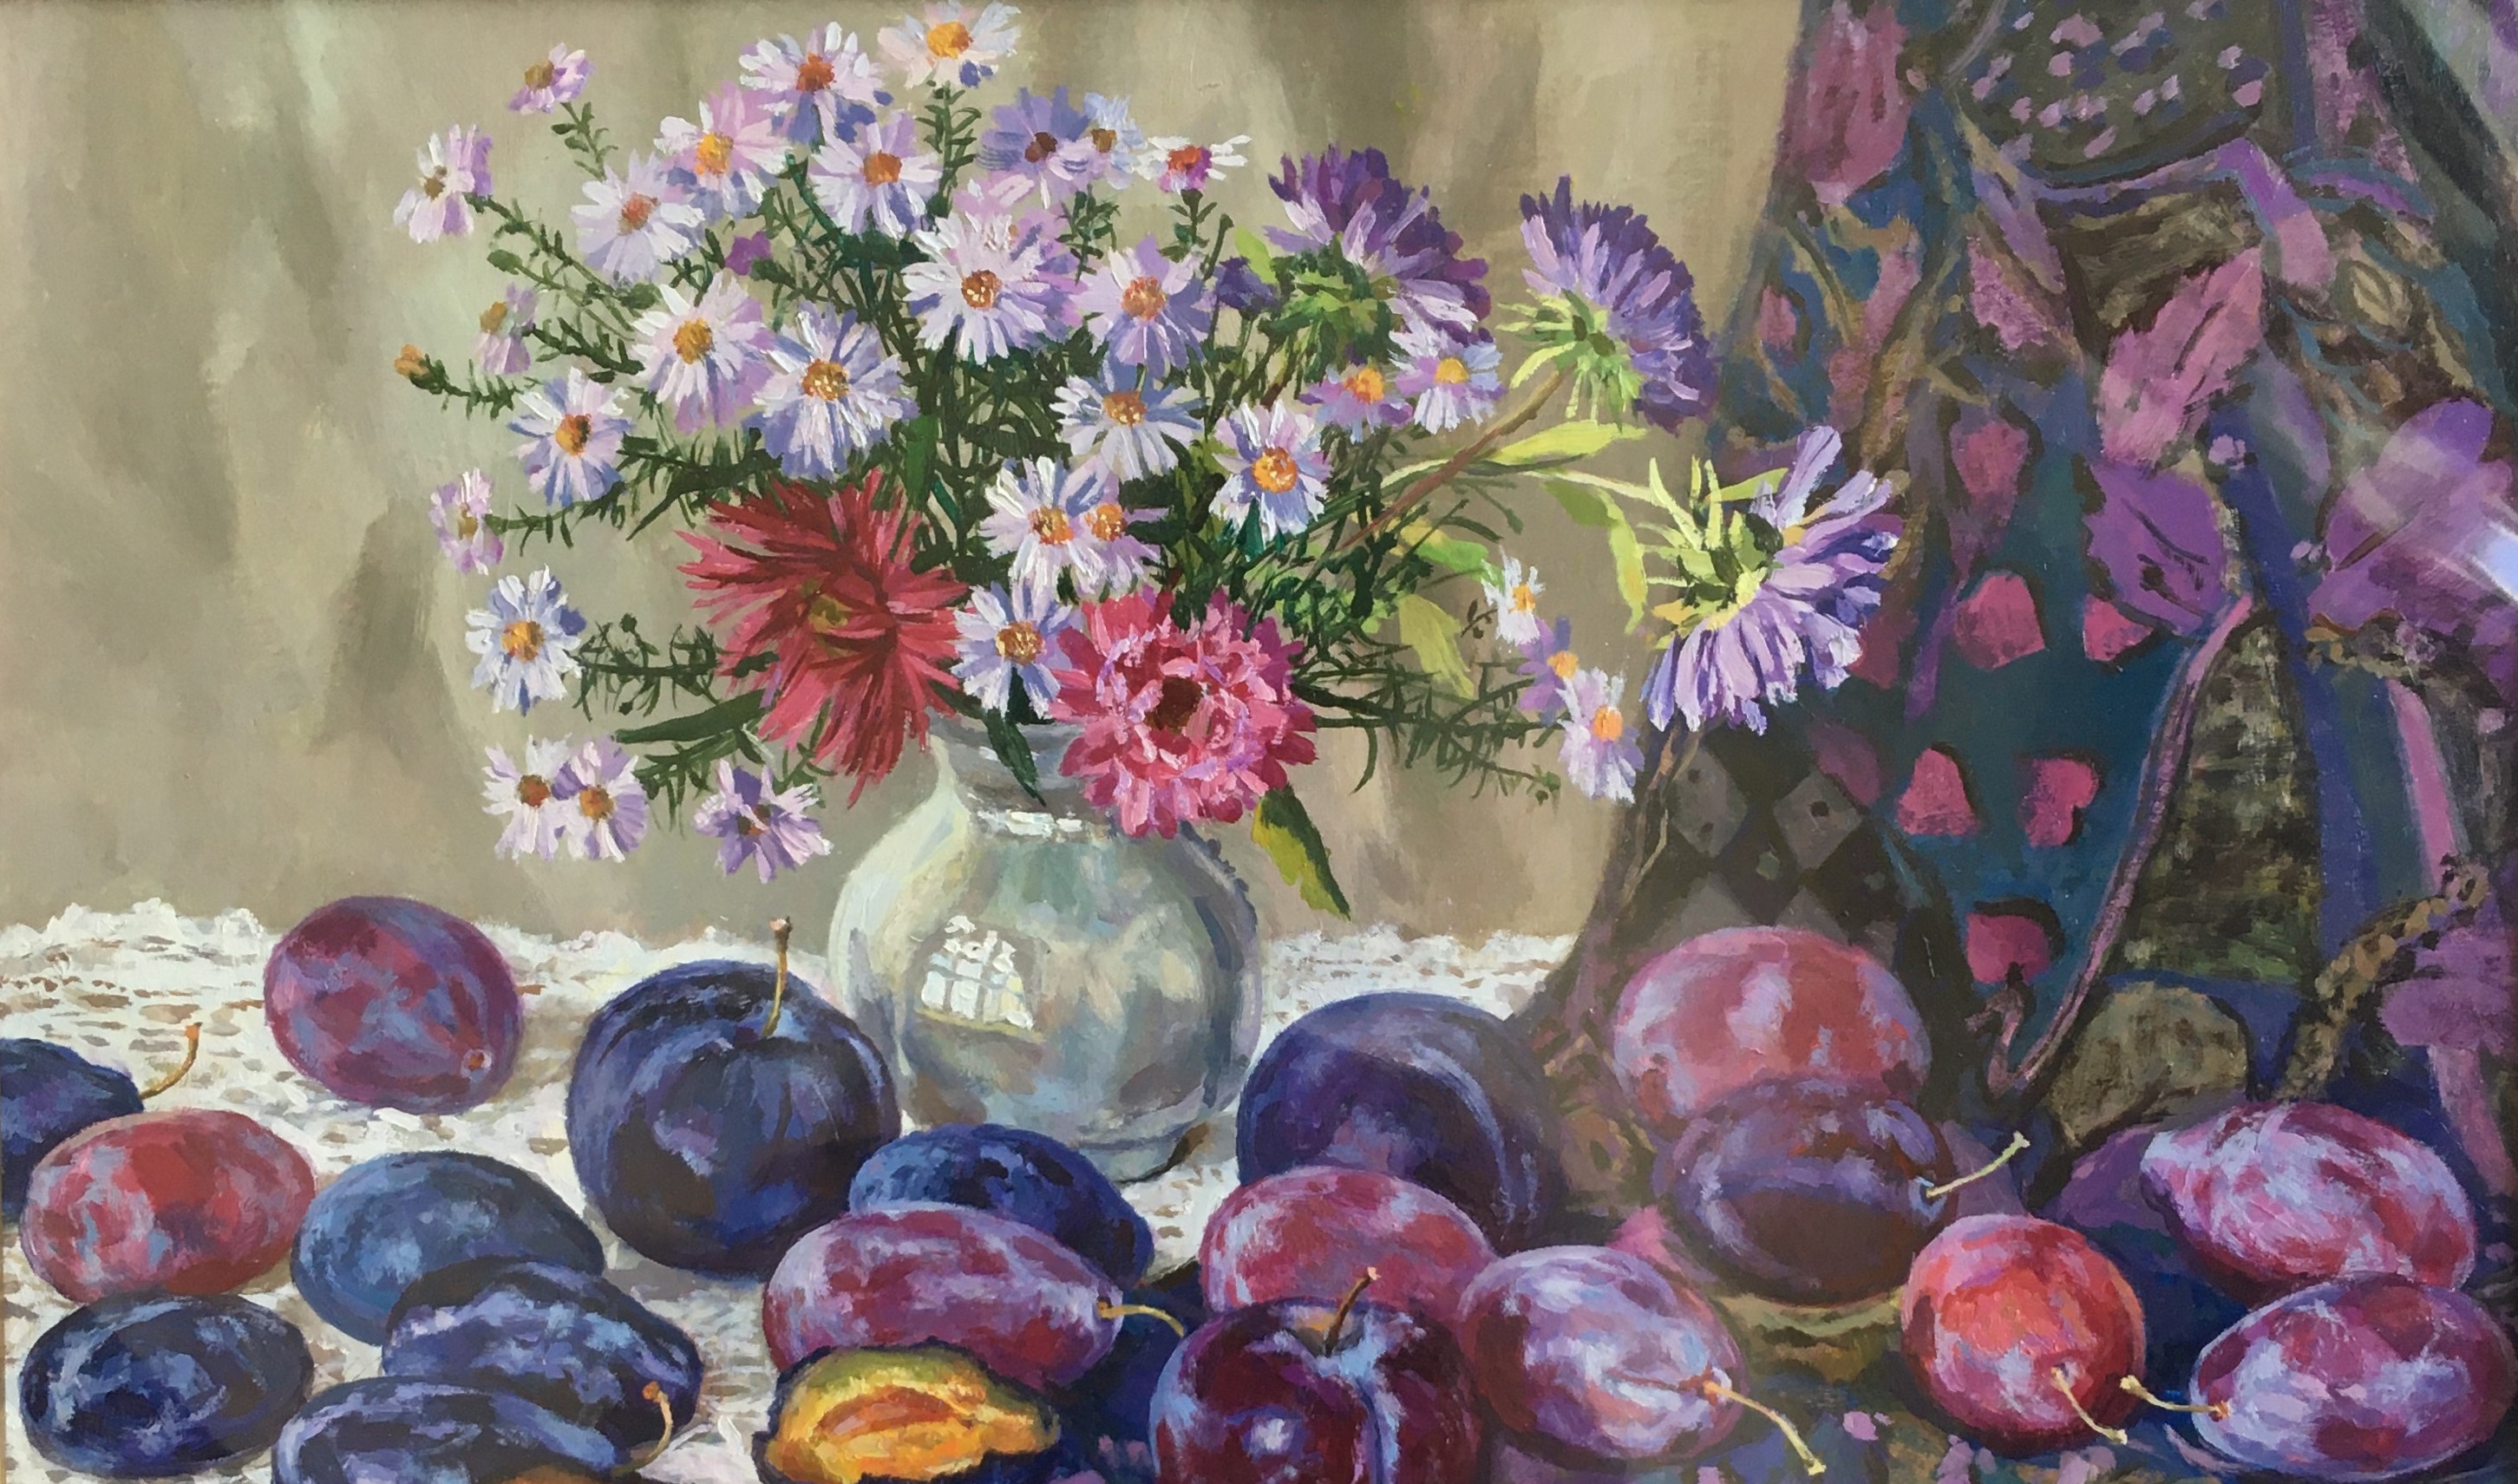 Галерея цветов, натюрмортов